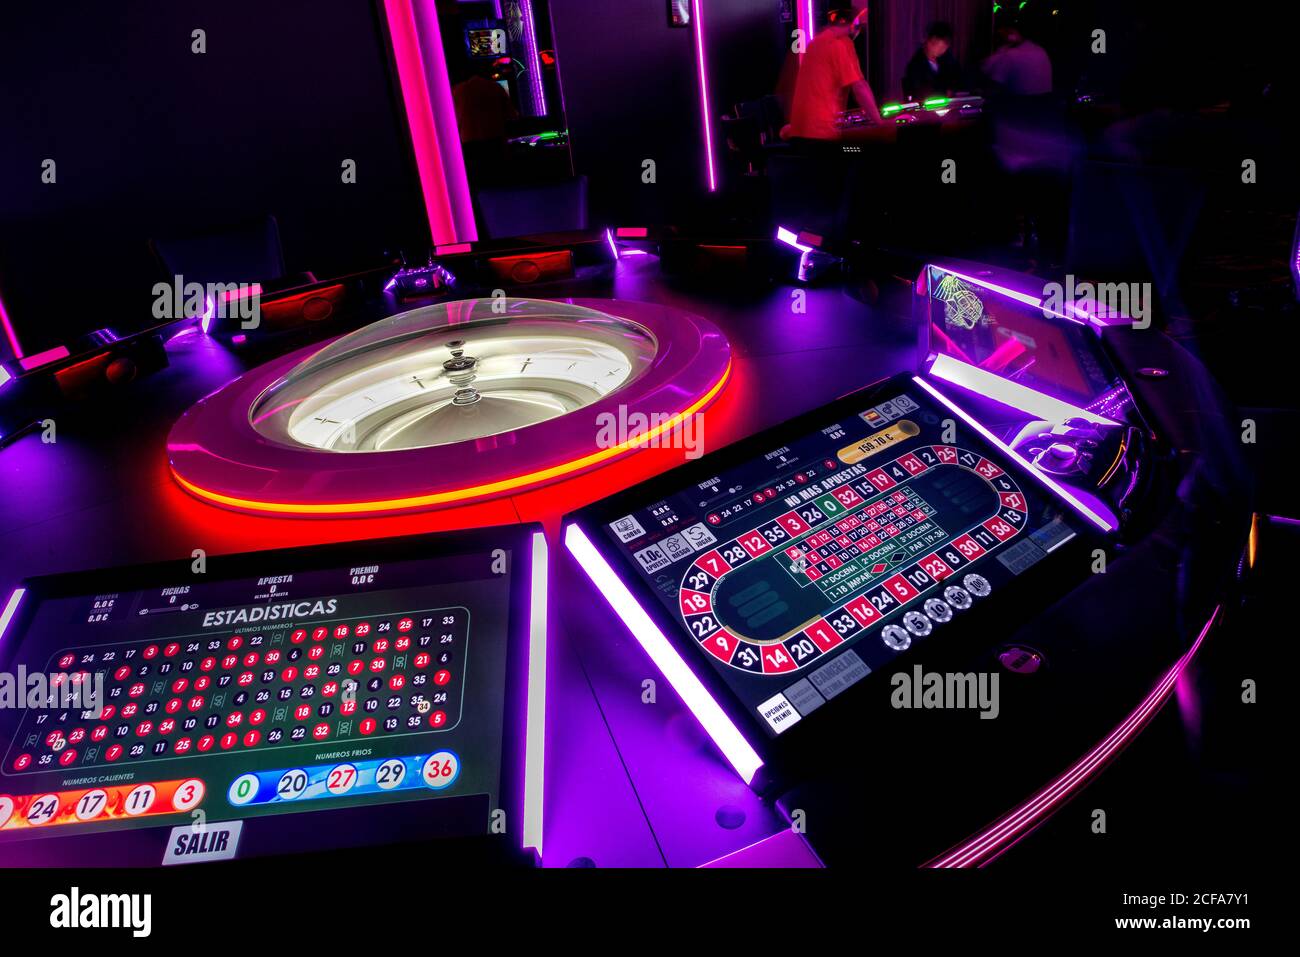 Tavolo da casinò con roulette moderna e schermi digitali illuminati da luci al neon nel casinò scuro Foto Stock